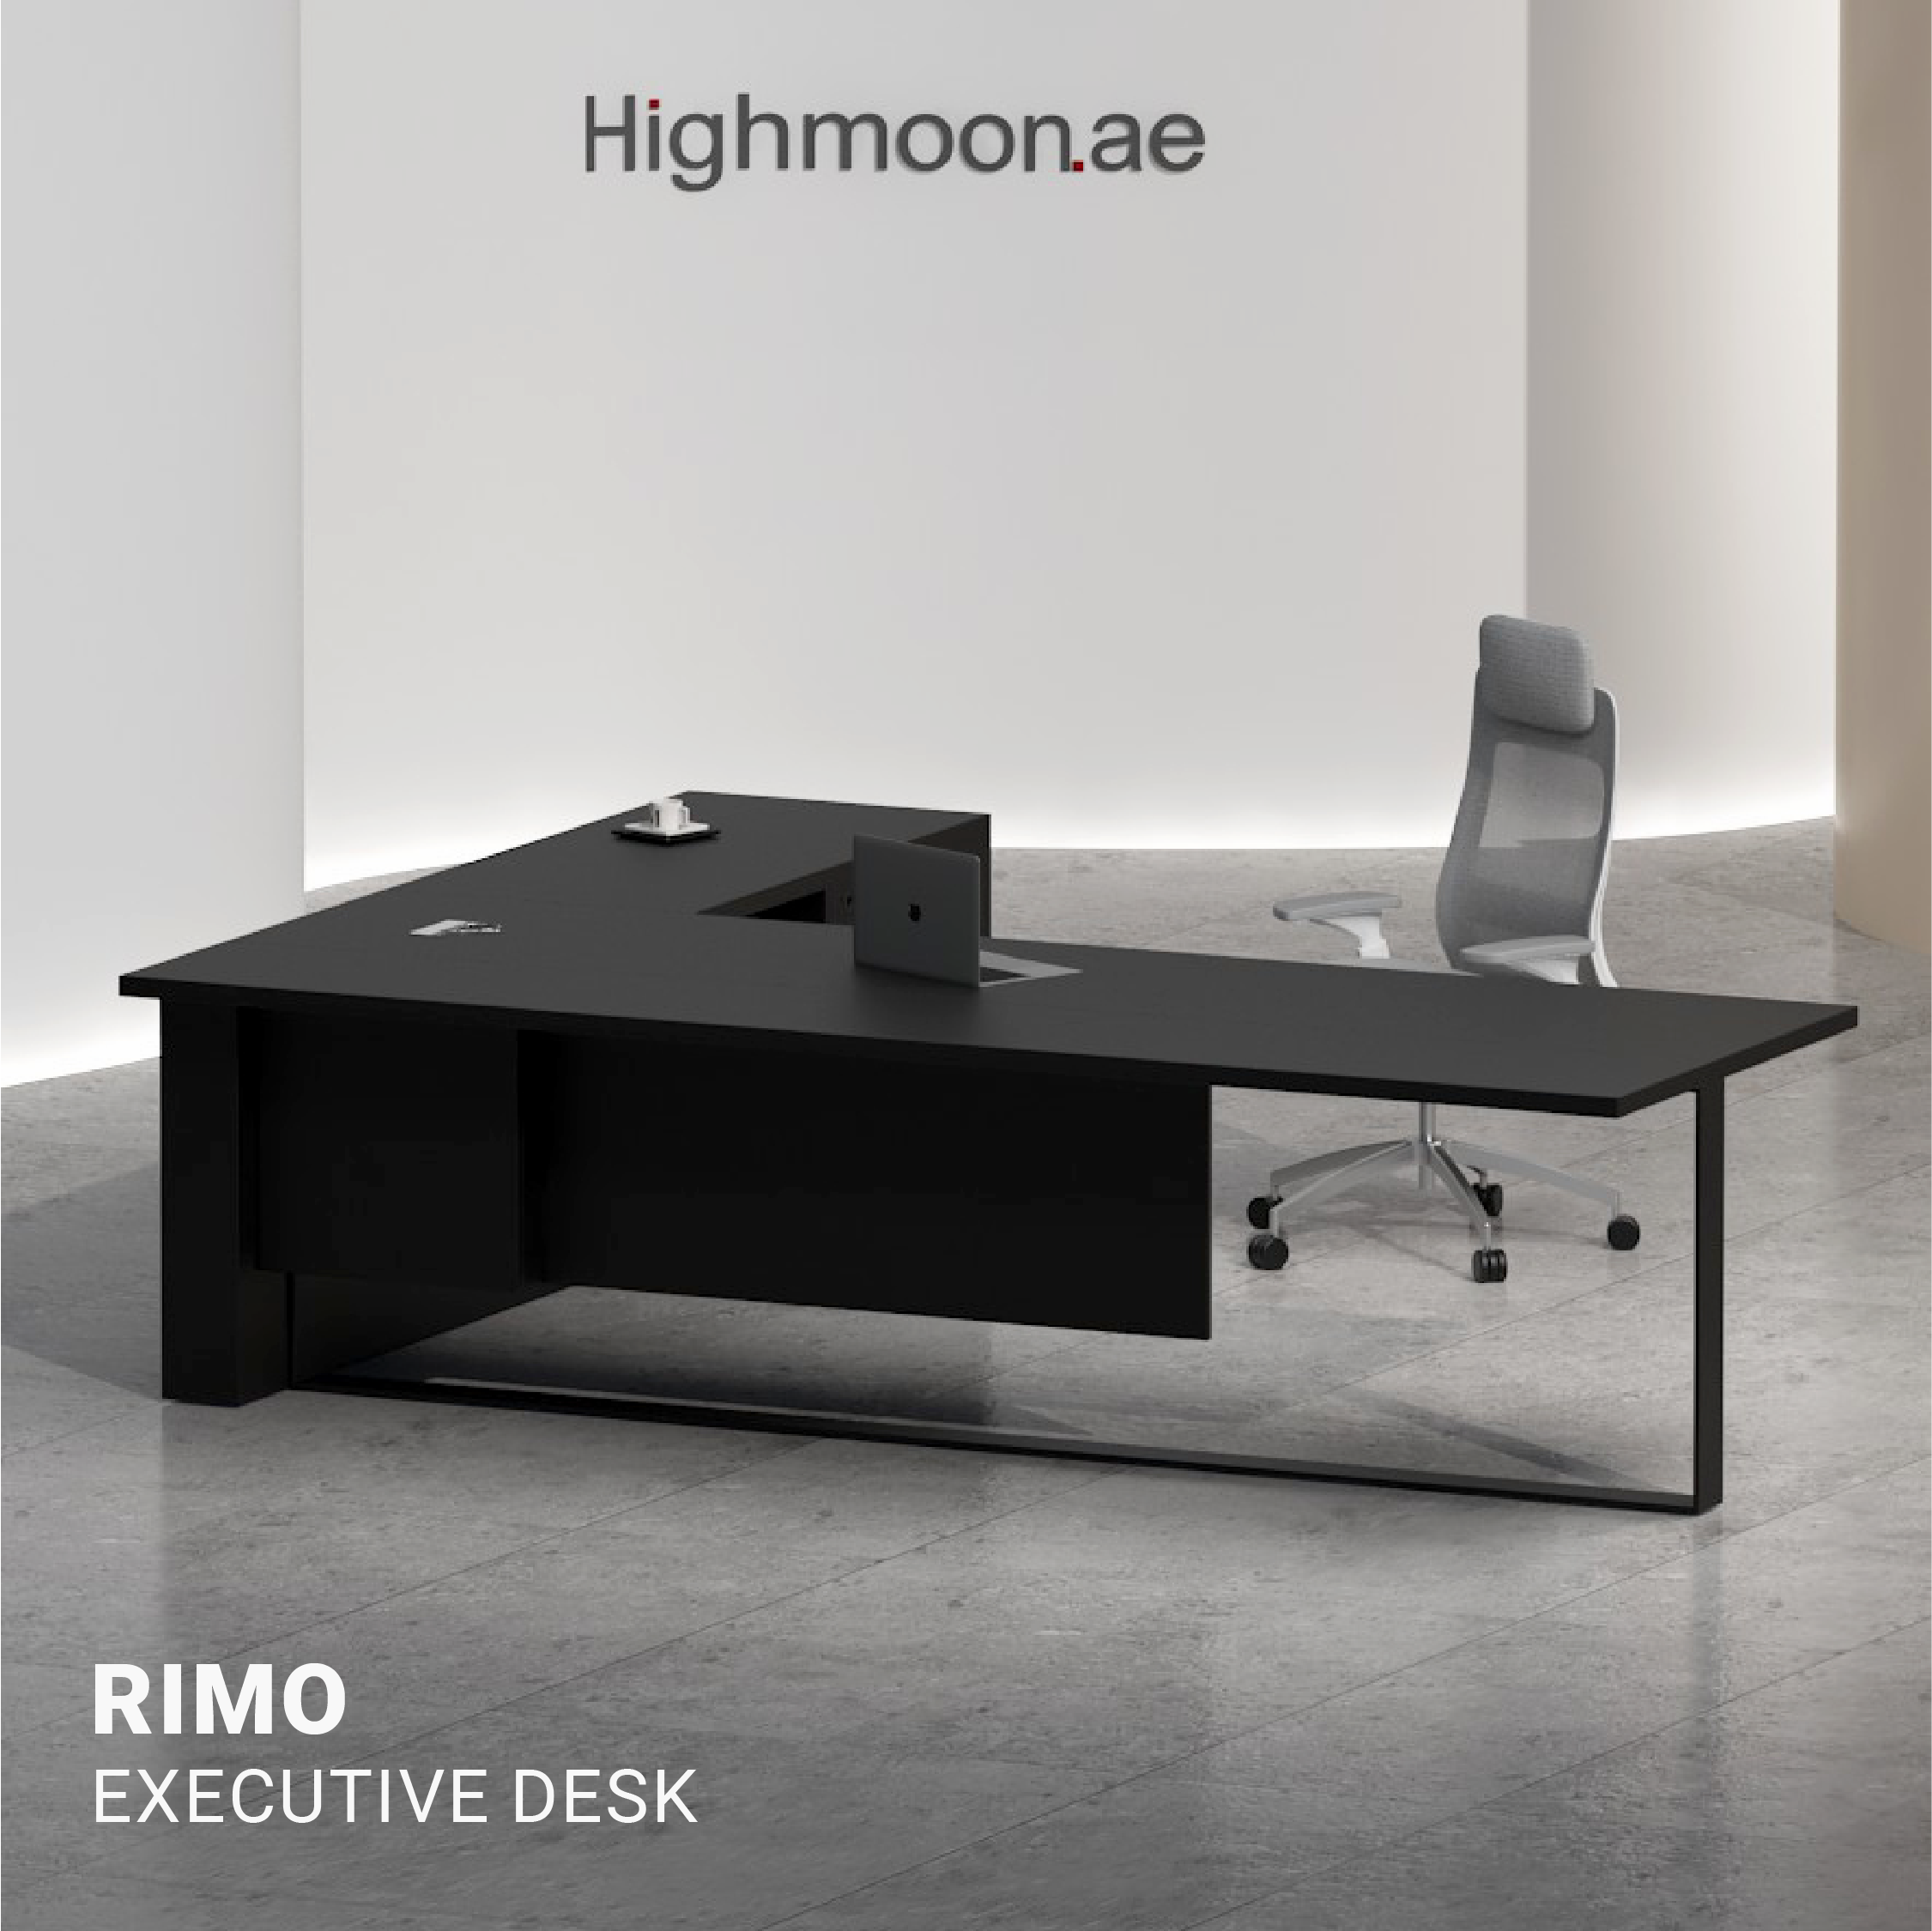 Rimo Executive Desk.01